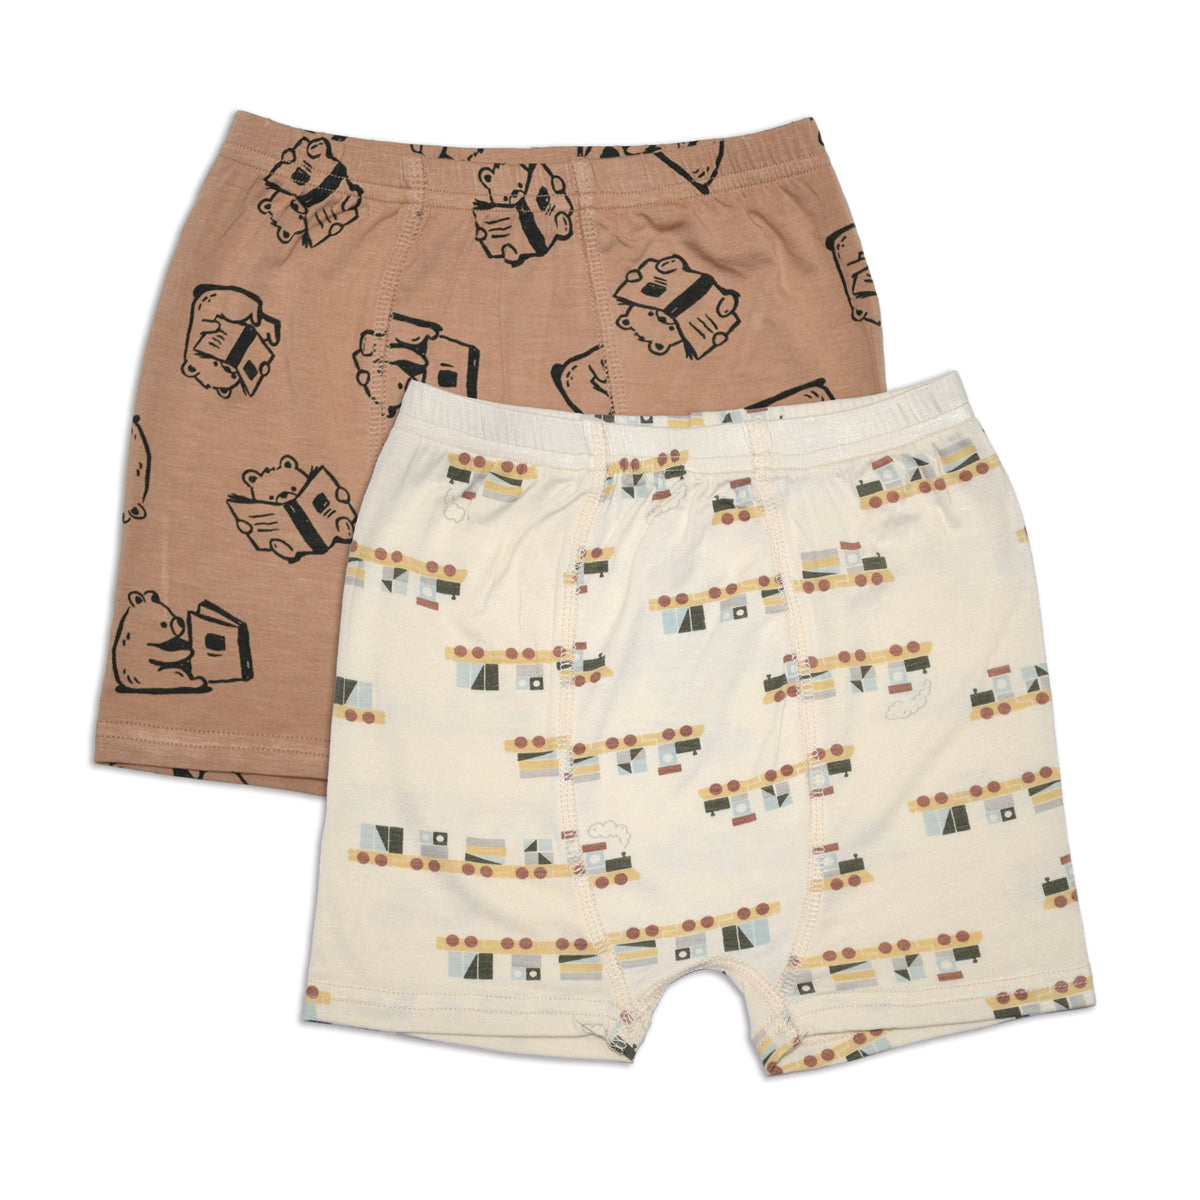 Bamboo Boyshorts Underwear 2 pack (Origami Prt/Fancy Fan Prt) 